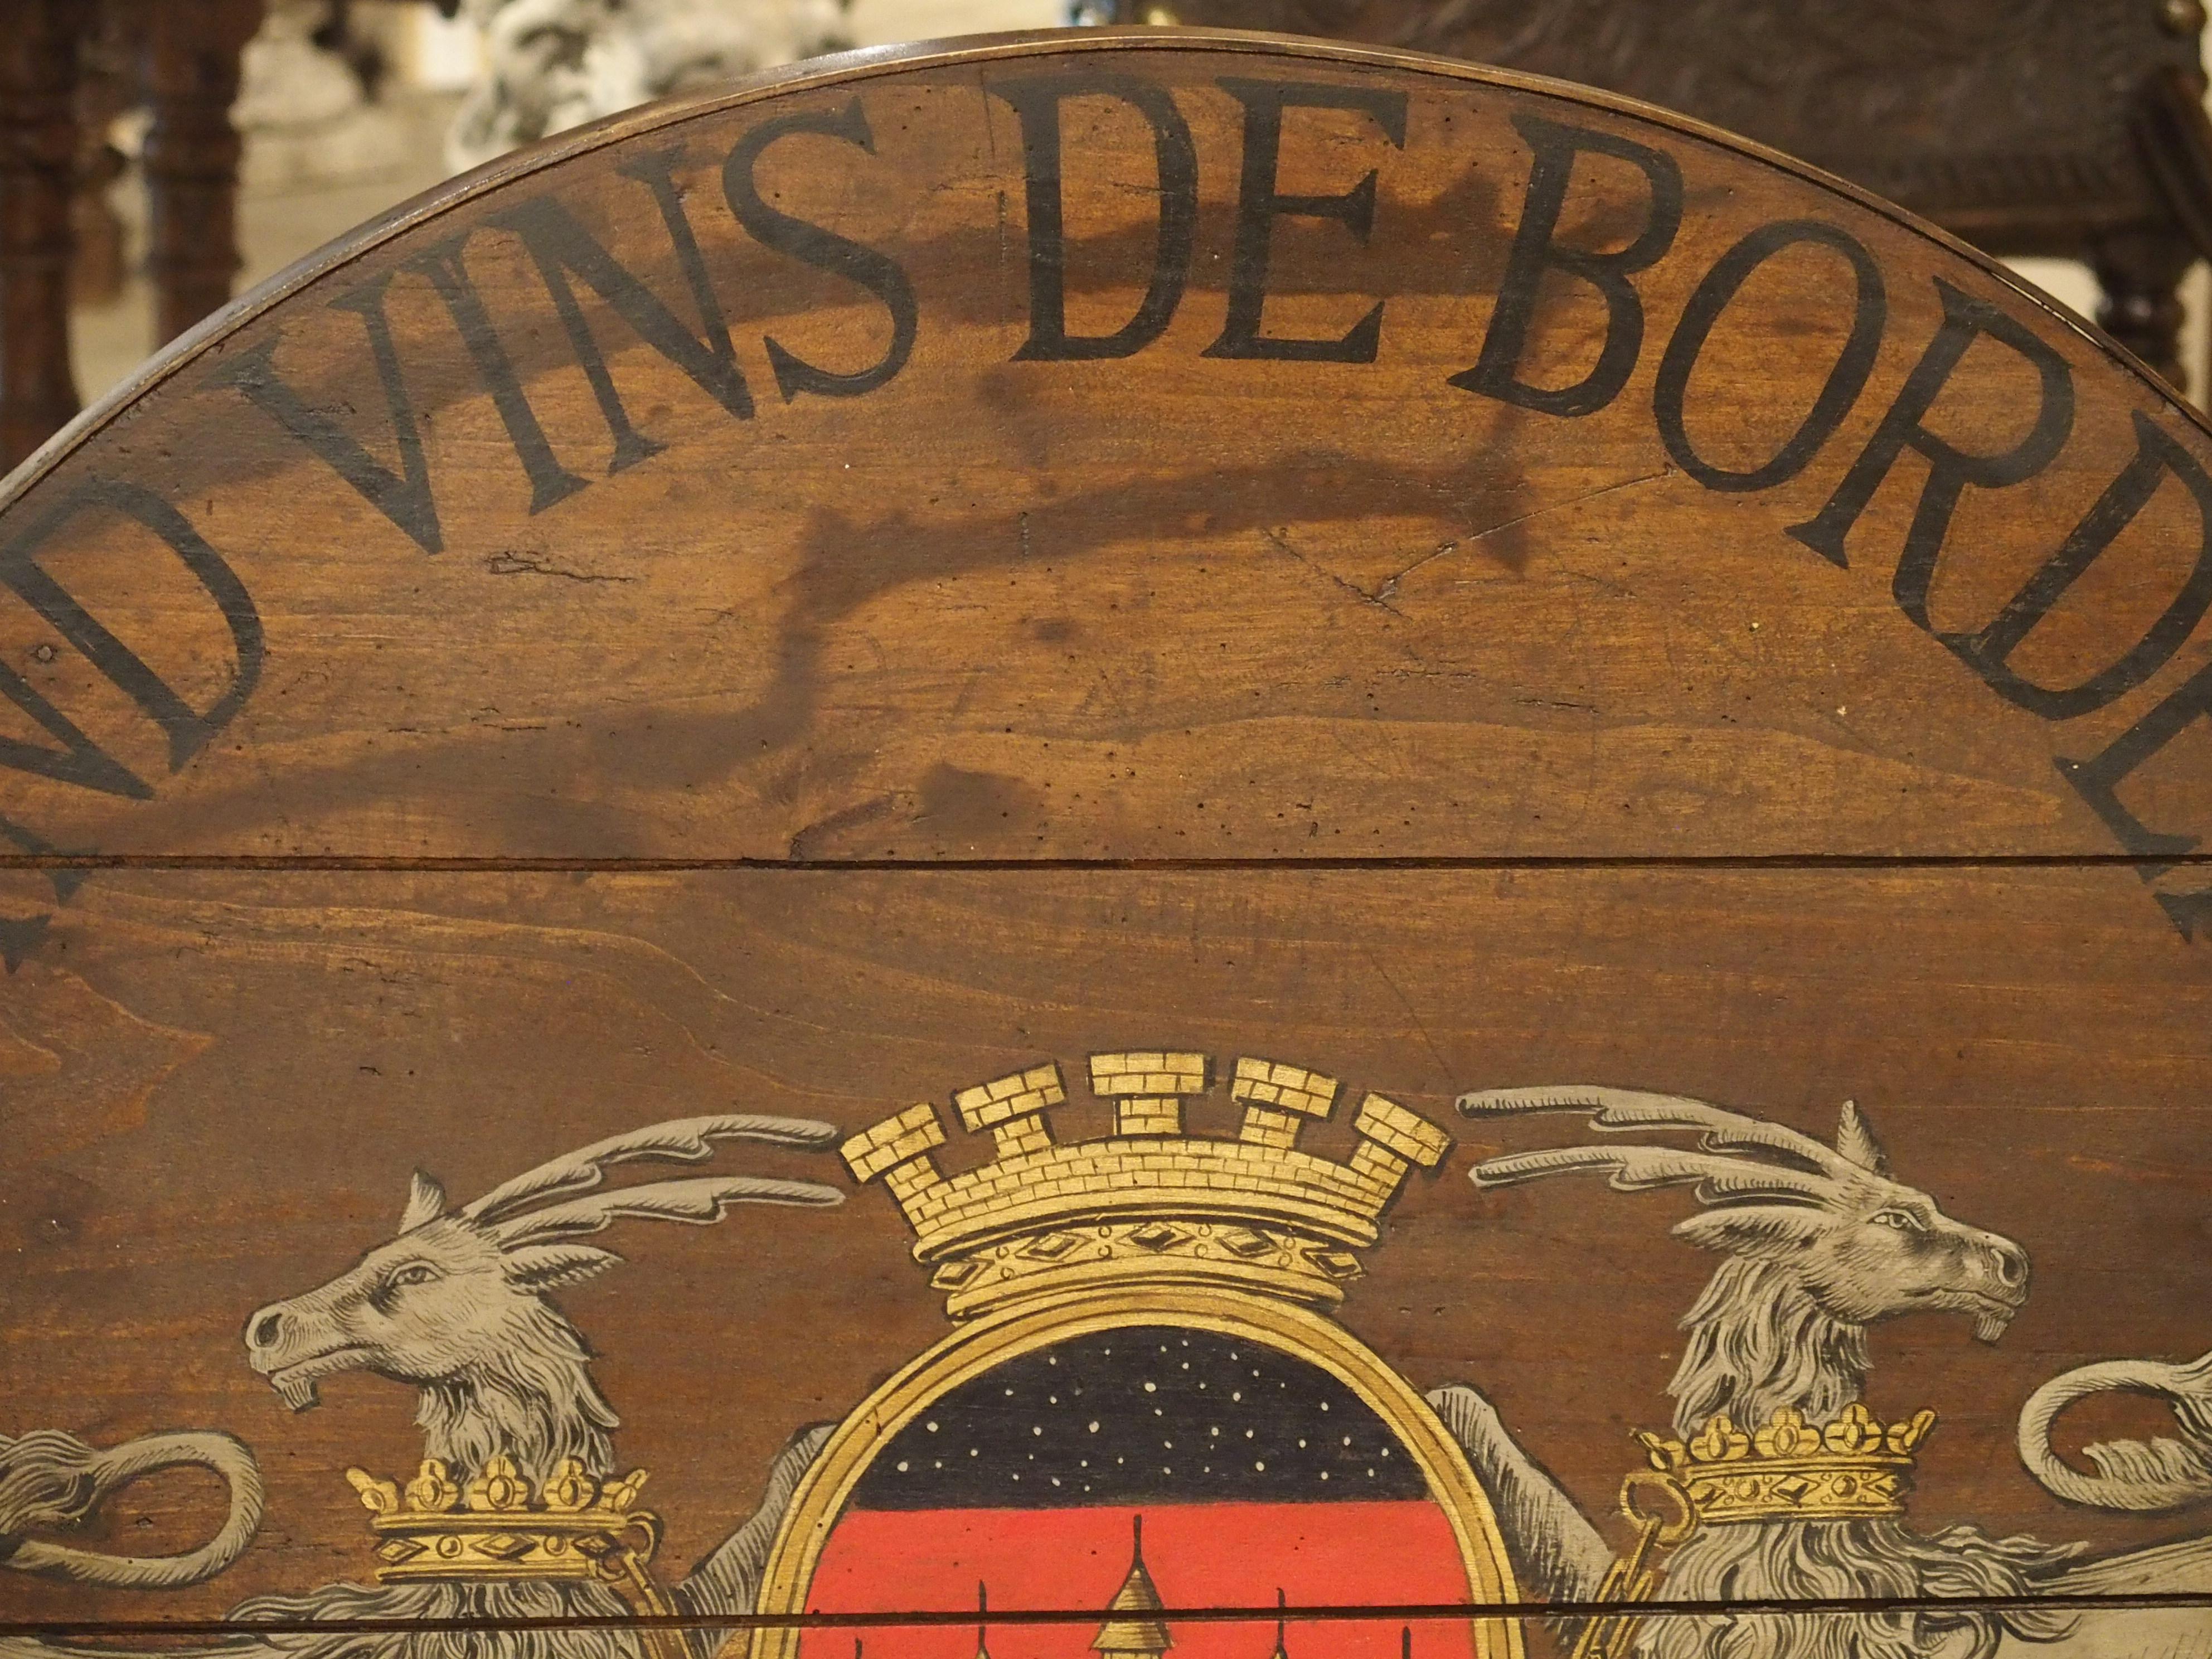 Antique Painted French Wine Tasting Table, “Grand Vins de Bordeaux” 1